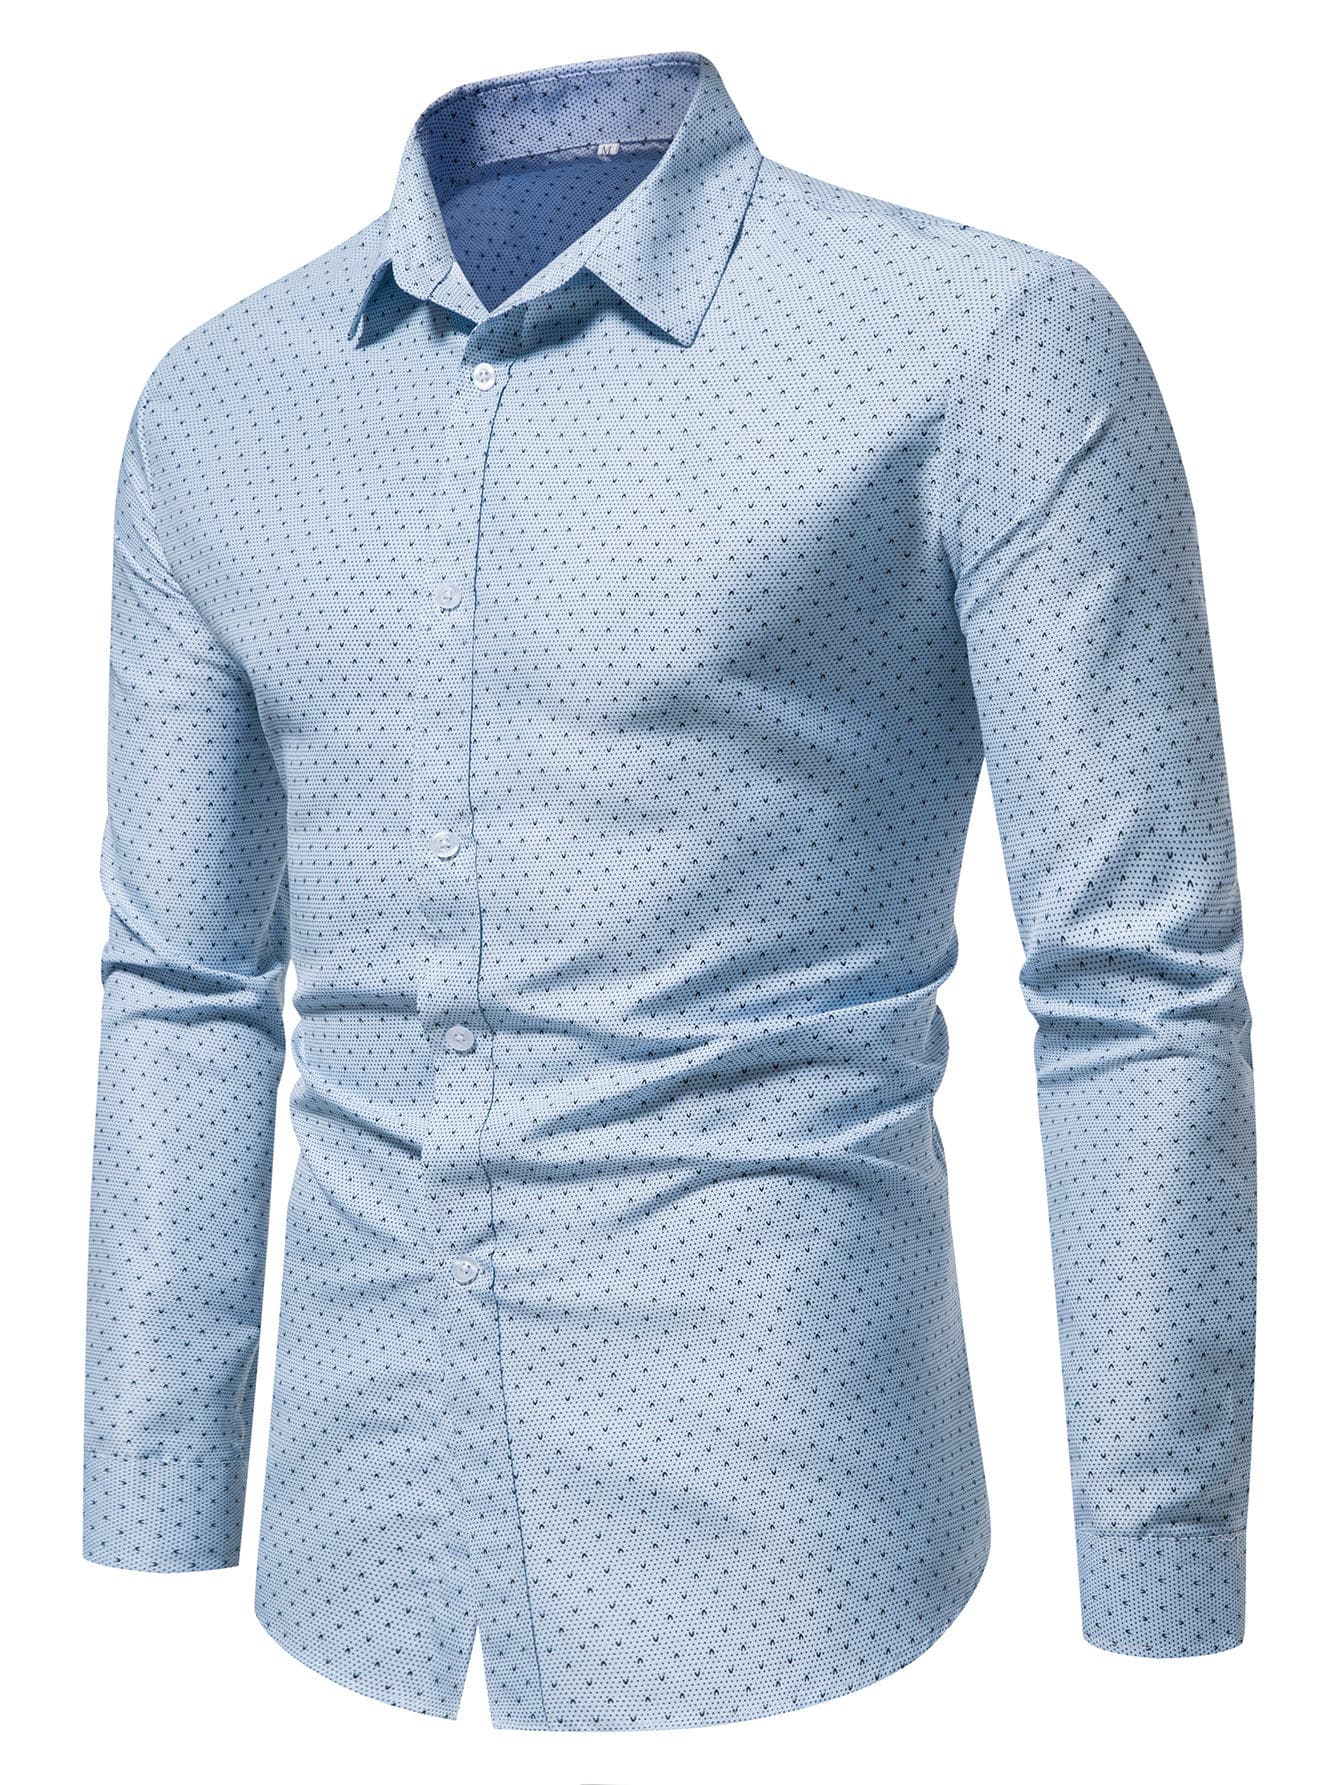 Manfinity Mode Men Allover Print Button Up Shirt